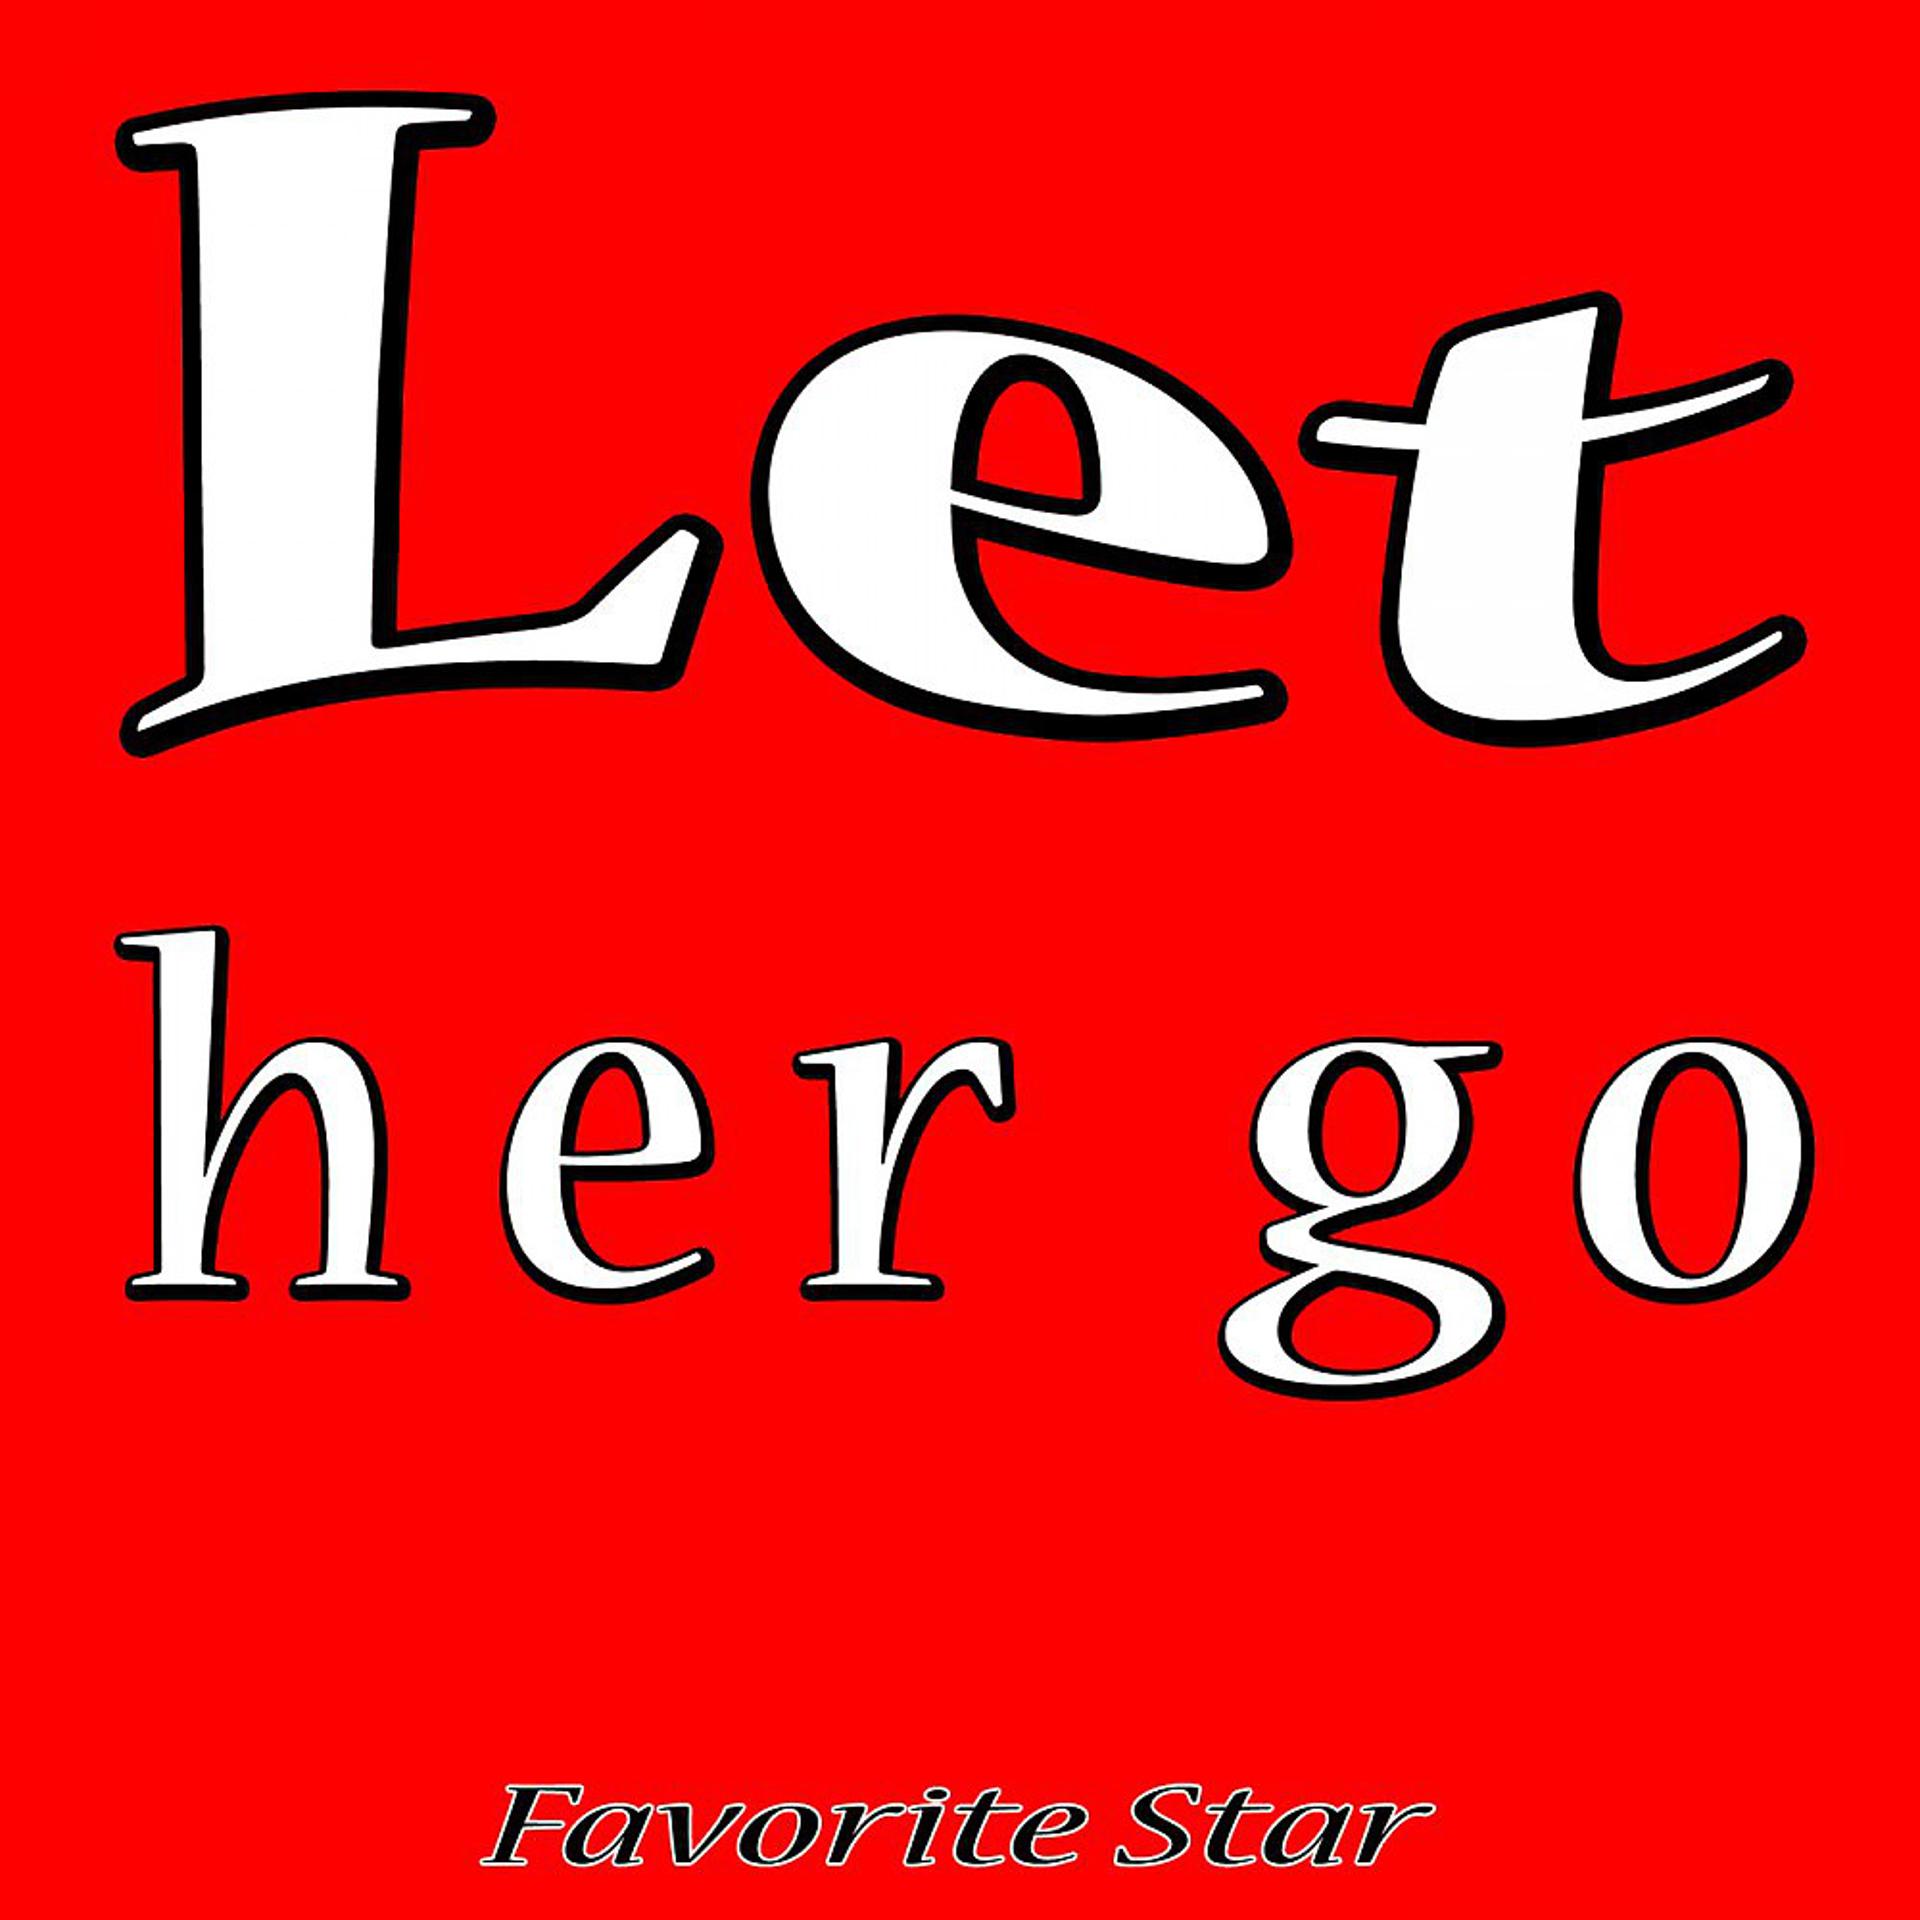 Постер альбома Let Her Go